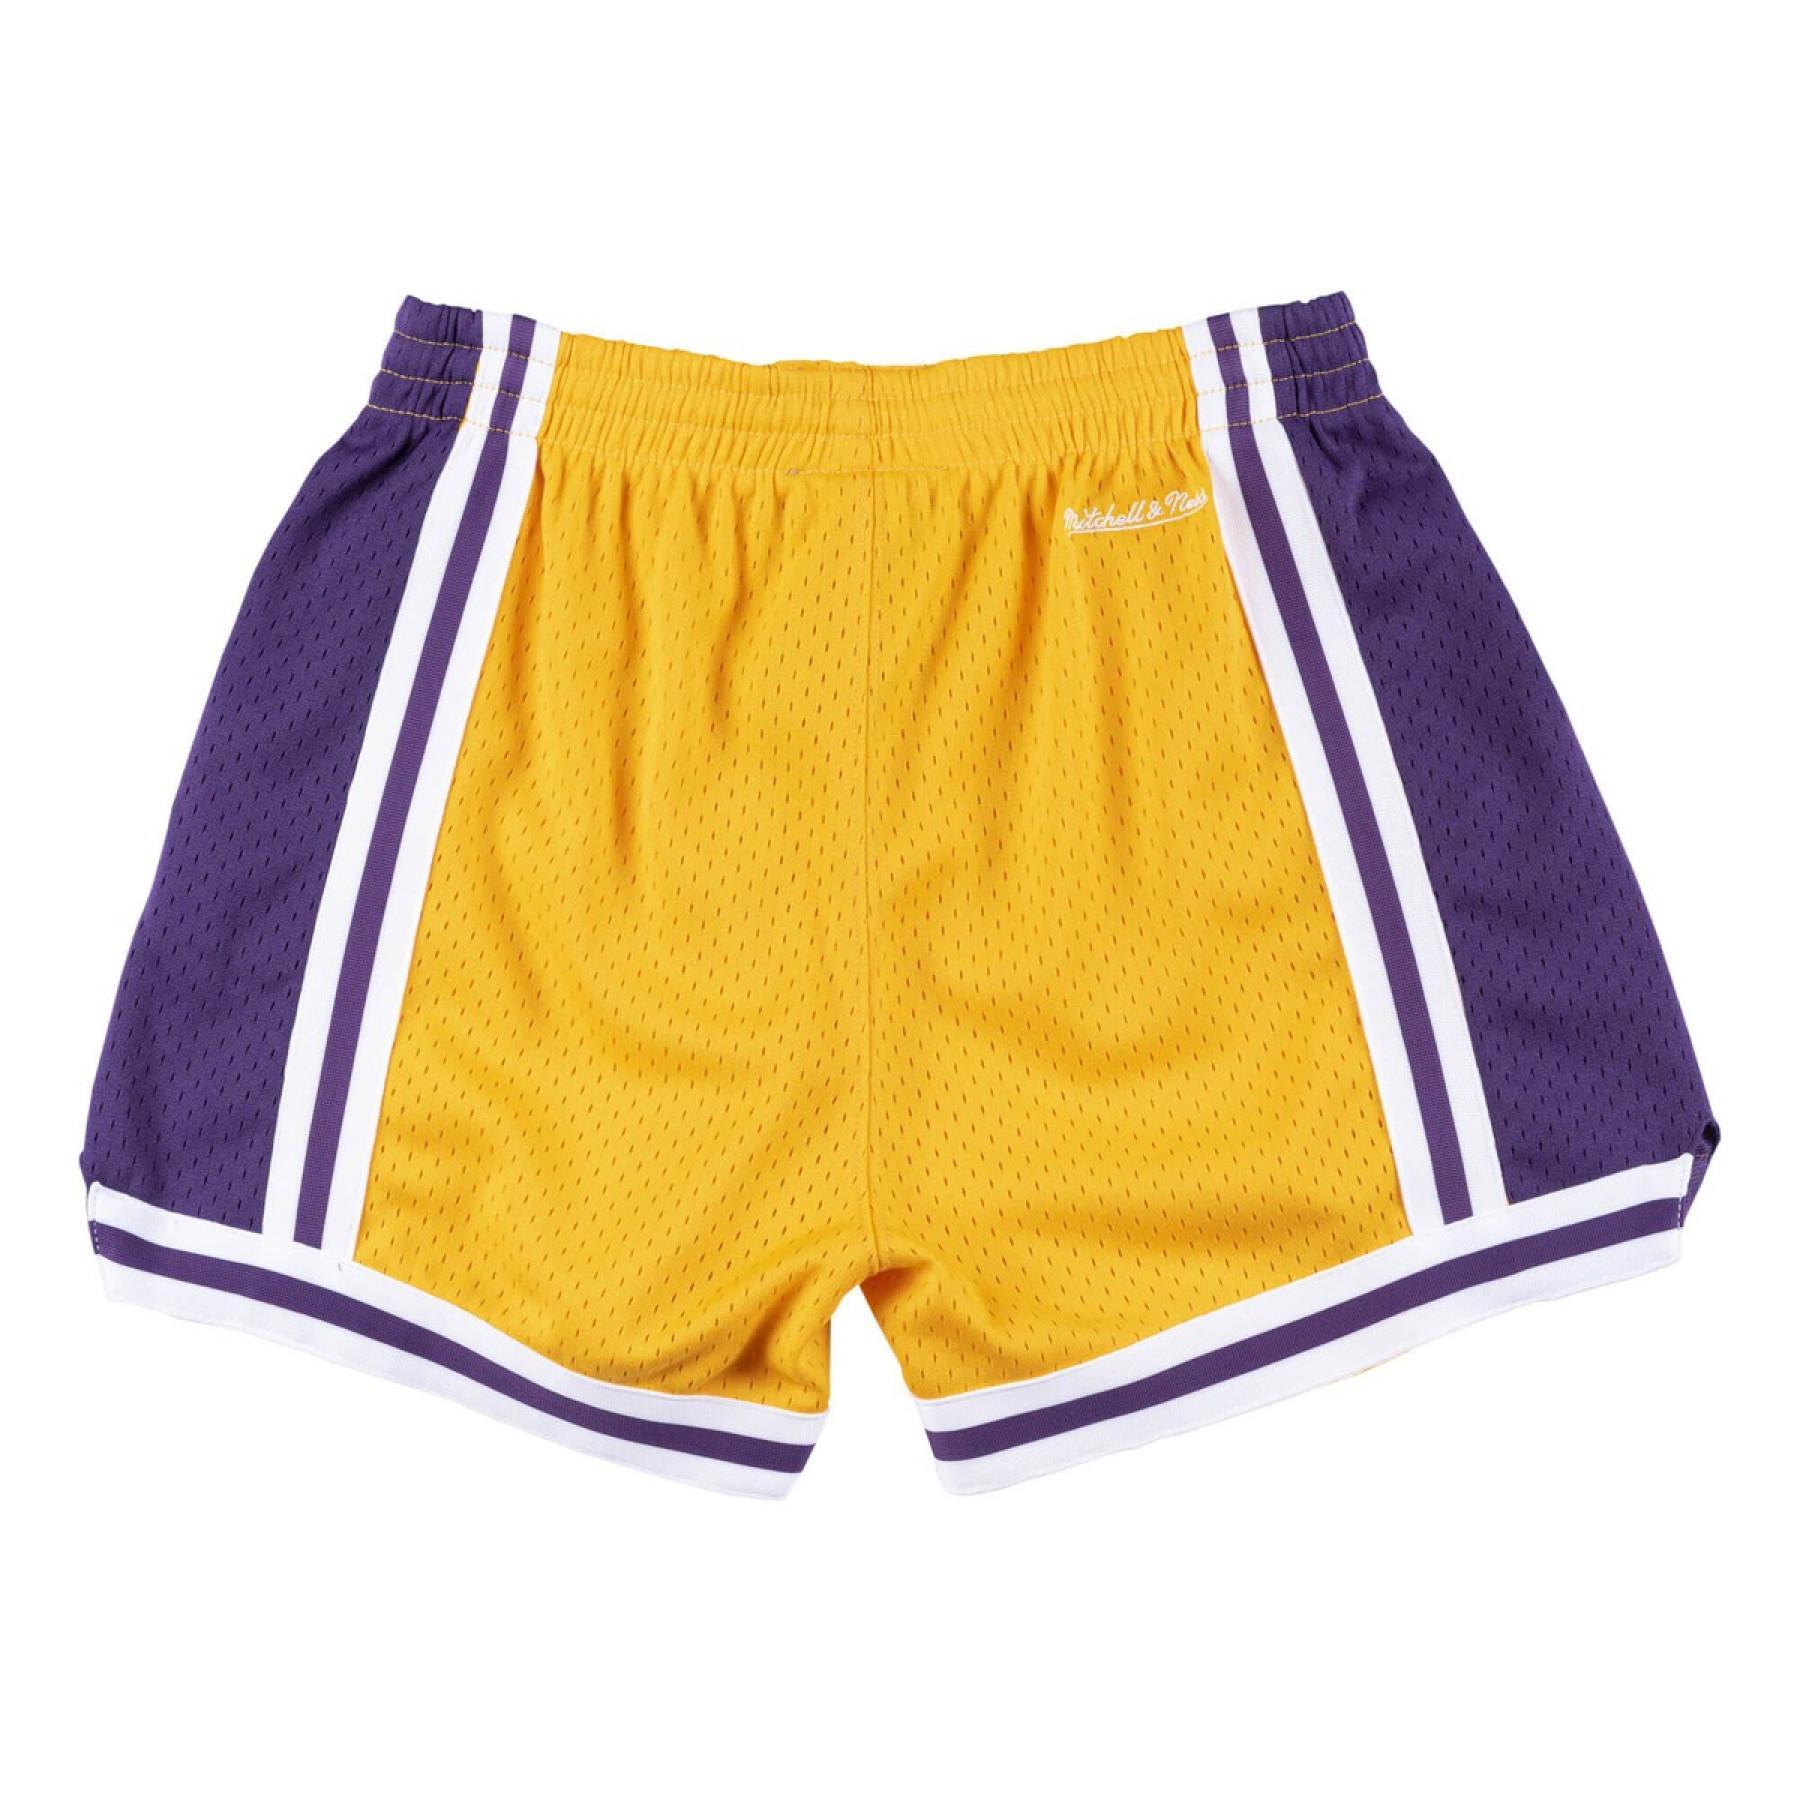 Damen-Shorts Los Angeles Lakers jump shot